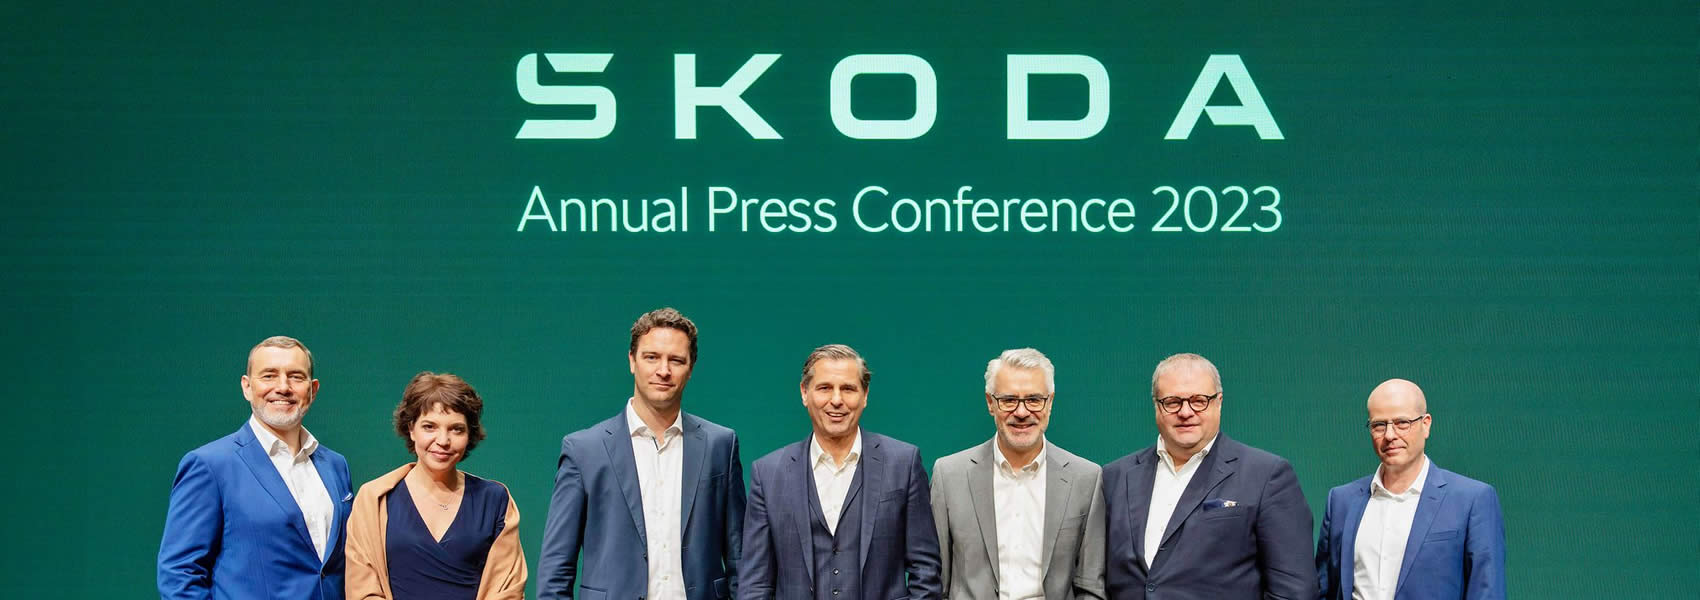 ŠKODA - Výroční tisková konference